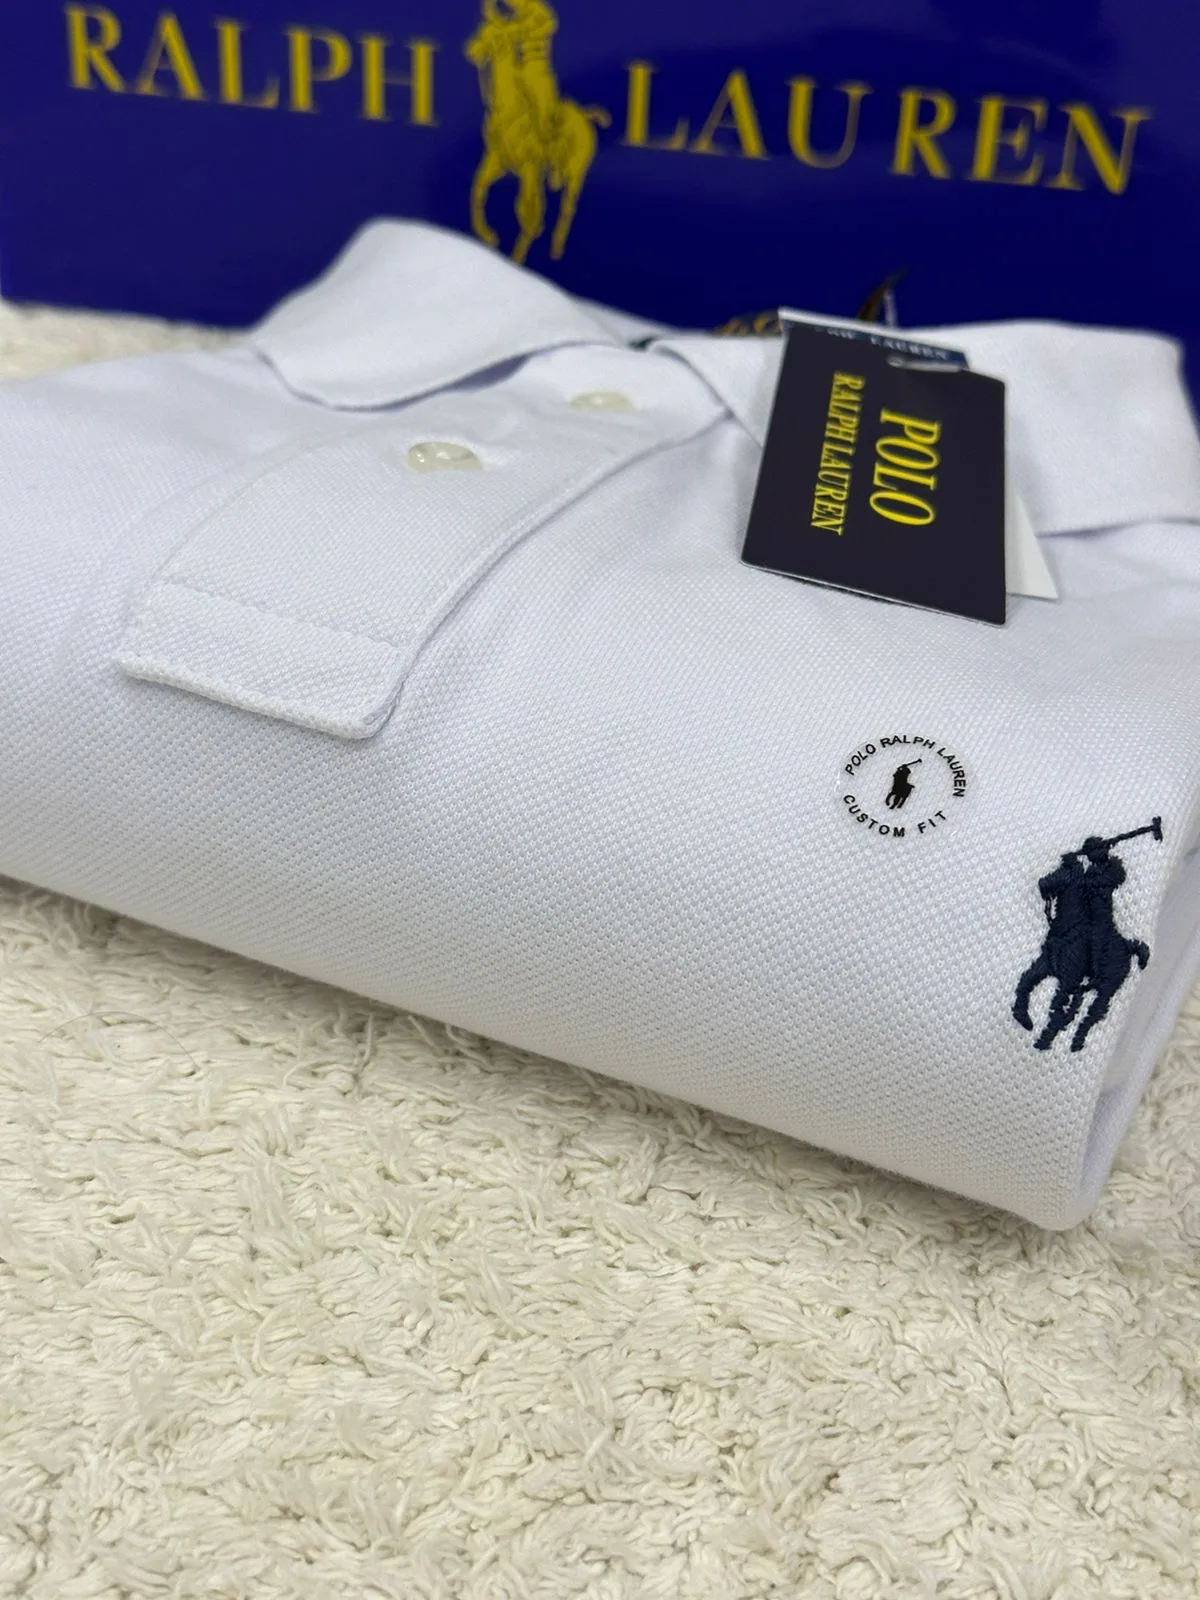 Camisetas Polo Ralph Lauren Original no Brasil com Preço de Outlet